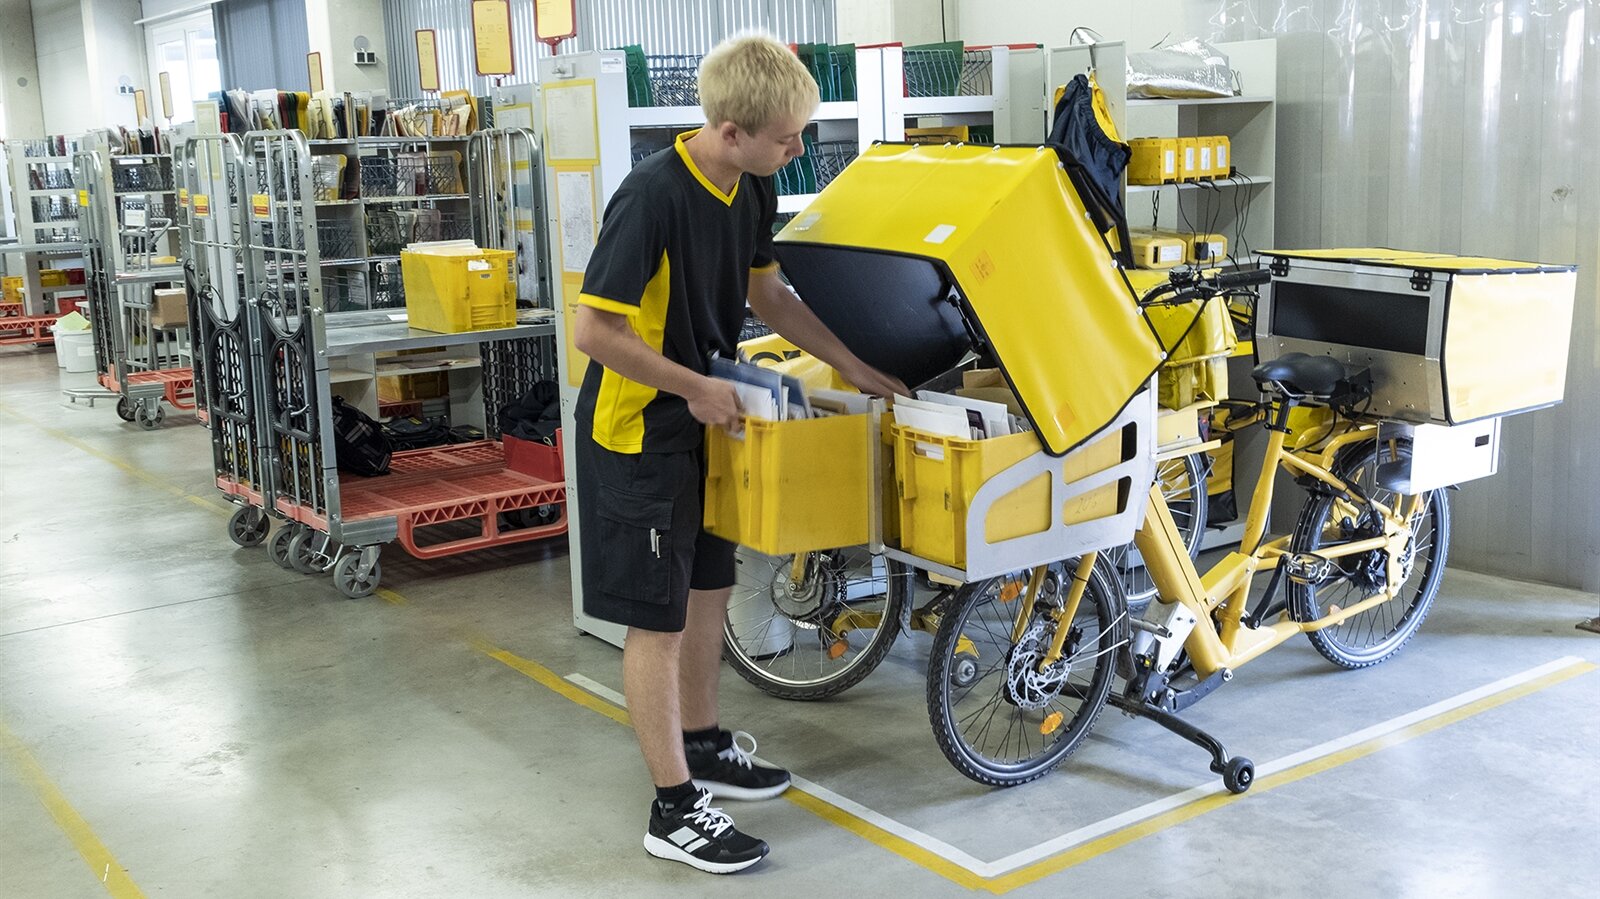 Simon packt die sortierte Post in große Taschen an seinem Fahrrad.